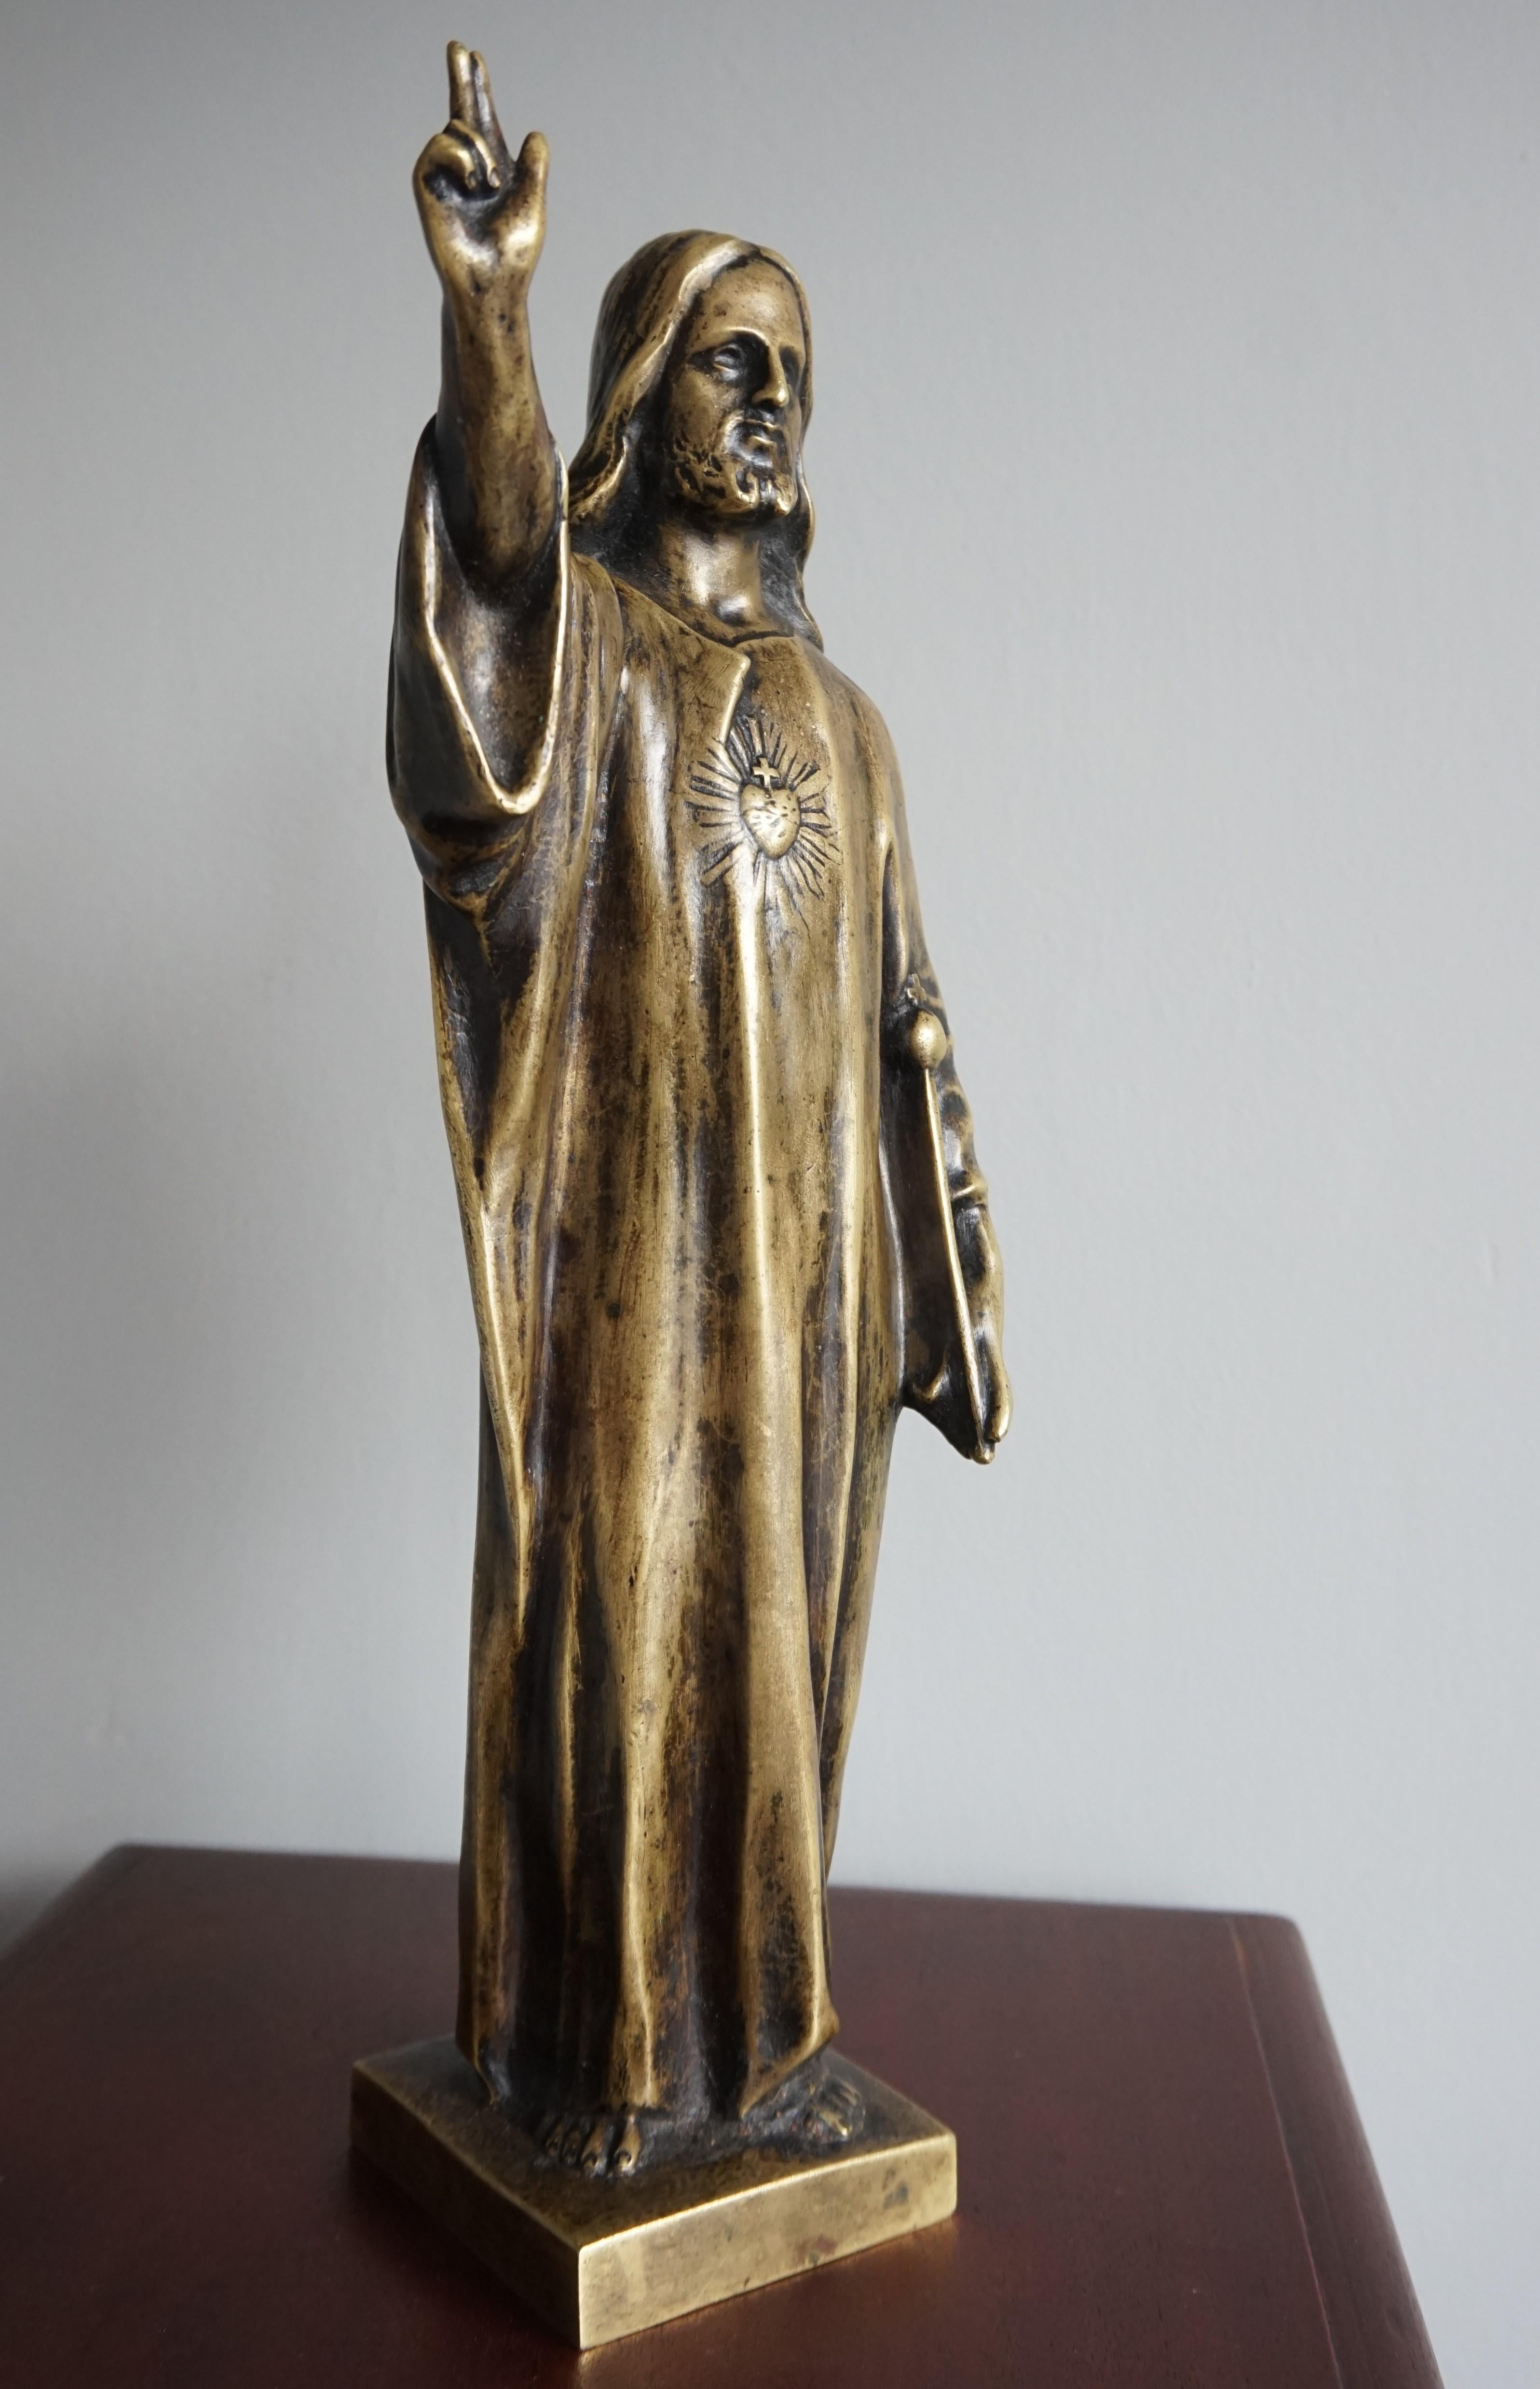 Statuette de Jésus de Nazareth en forme de cœur sacré, fabriquée à la main.

Cette sculpture significative du Saint Cœur du Christ est réalisée en bronze et uniquement en bronze. Tous ces objets ont été fabriqués à la main dans les premières années